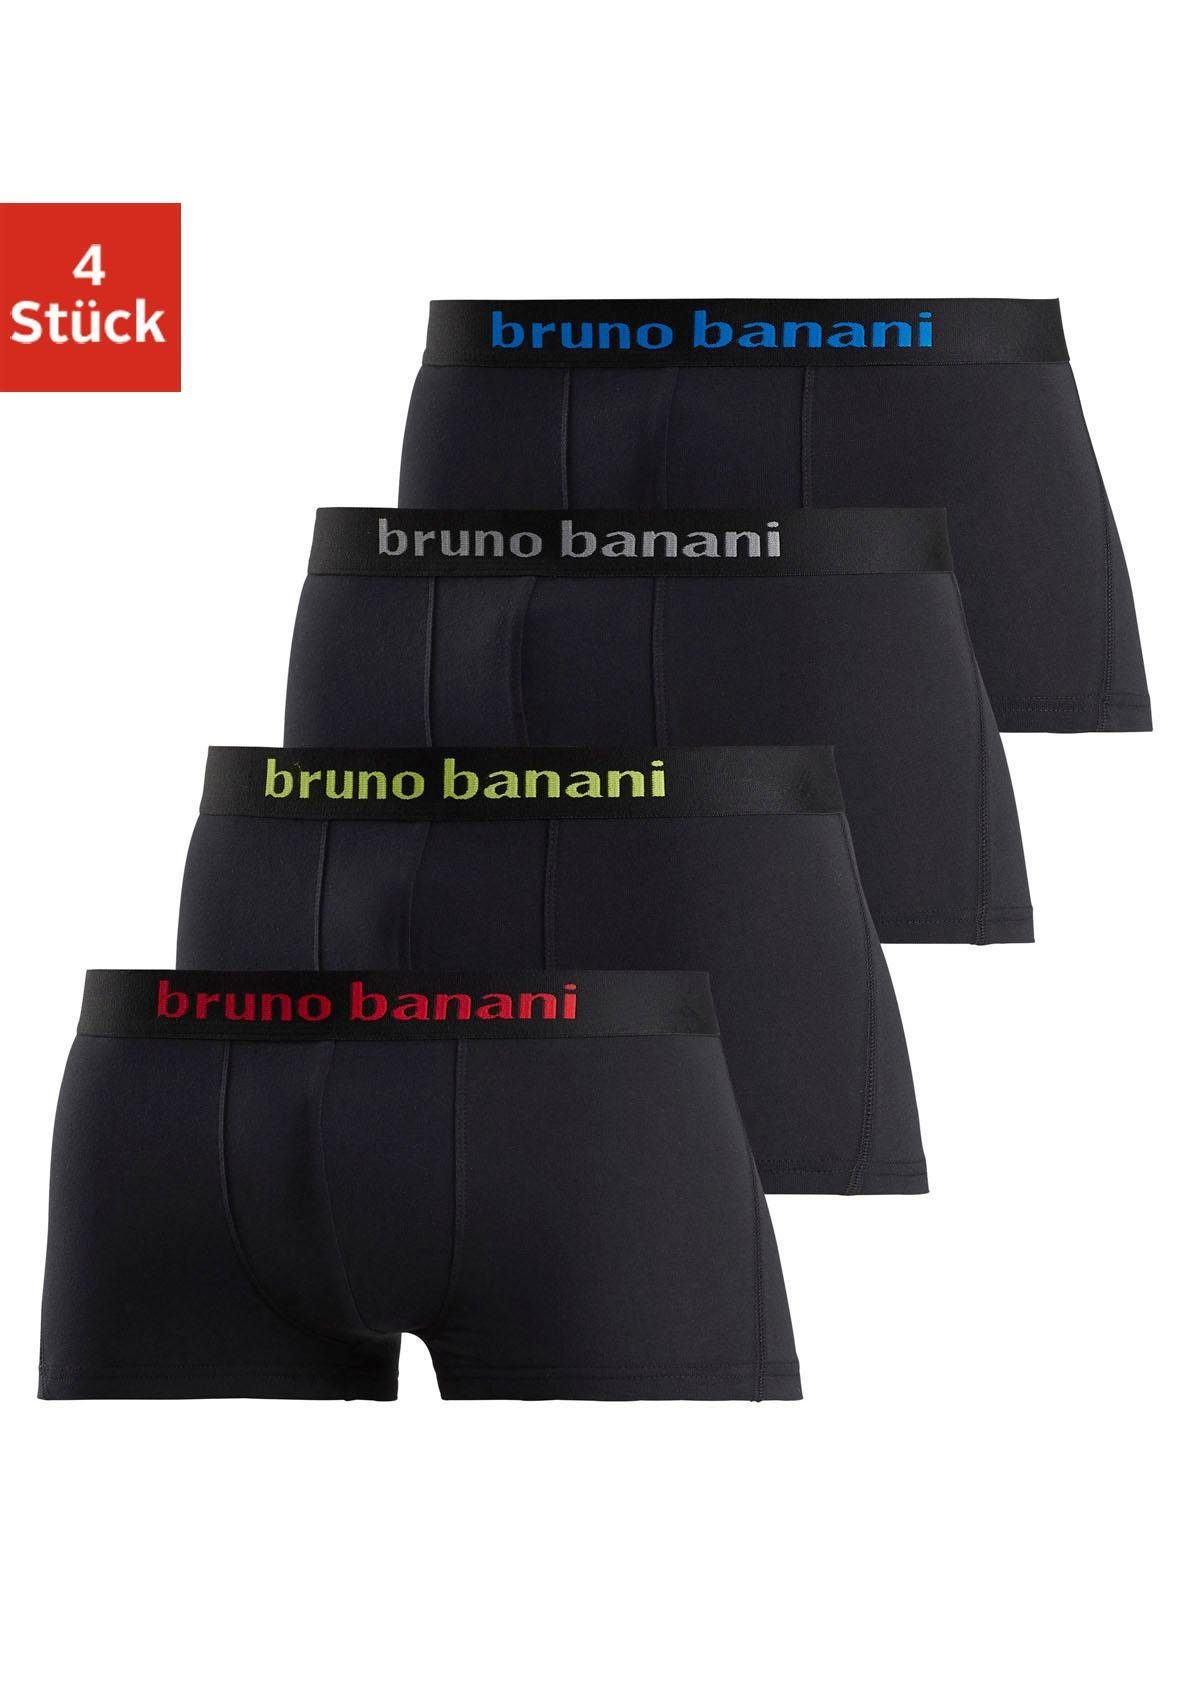 bruno banani boxershort in hipster-model met logo weefband (set, 4 stuks) zwart